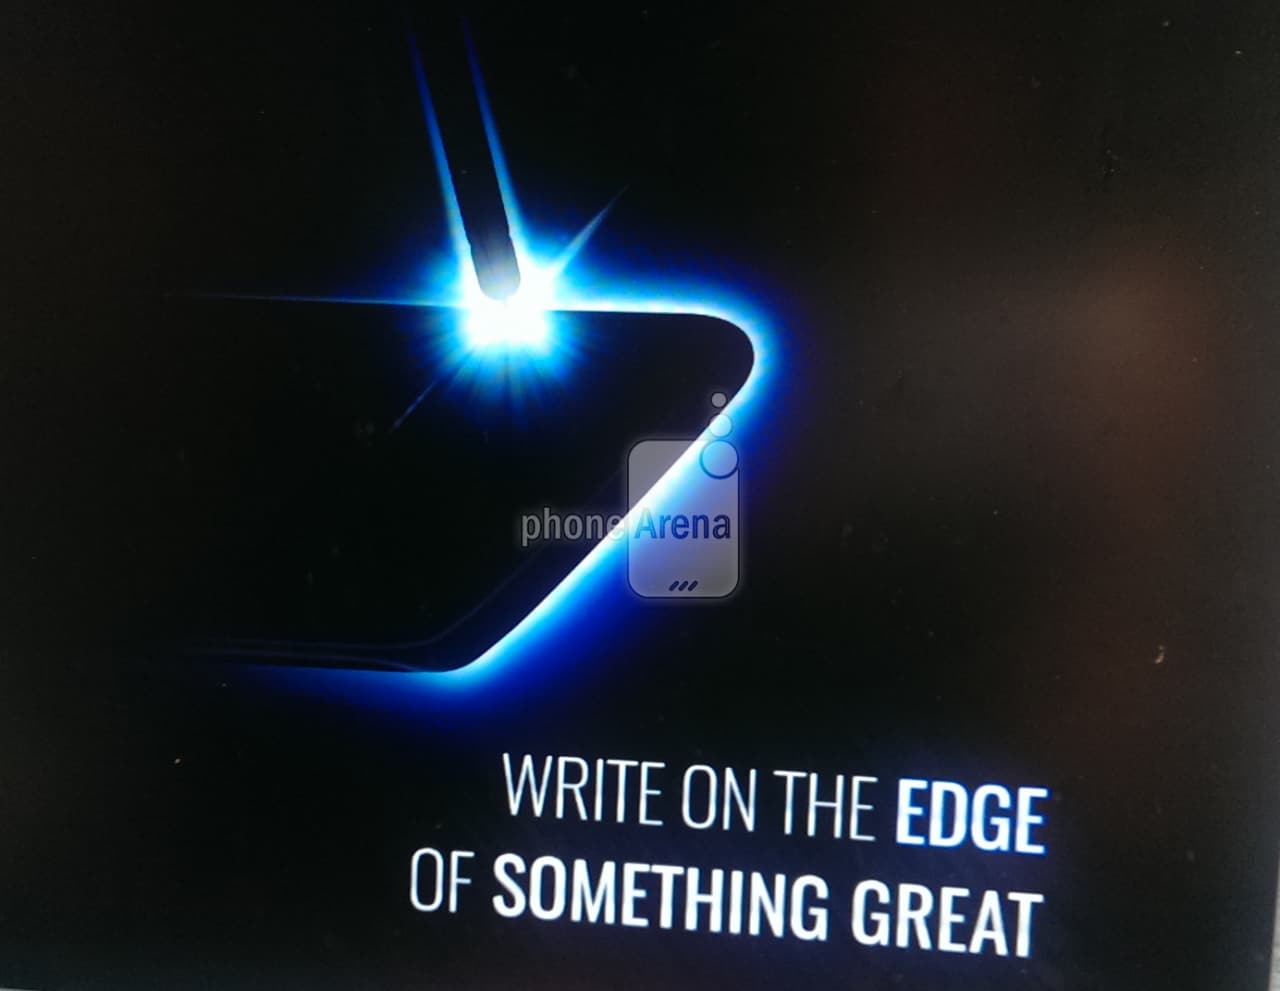 Trapelato un fotogramma del teaser di Galaxy Note 7 che confermebbe lo schermo edge (foto)